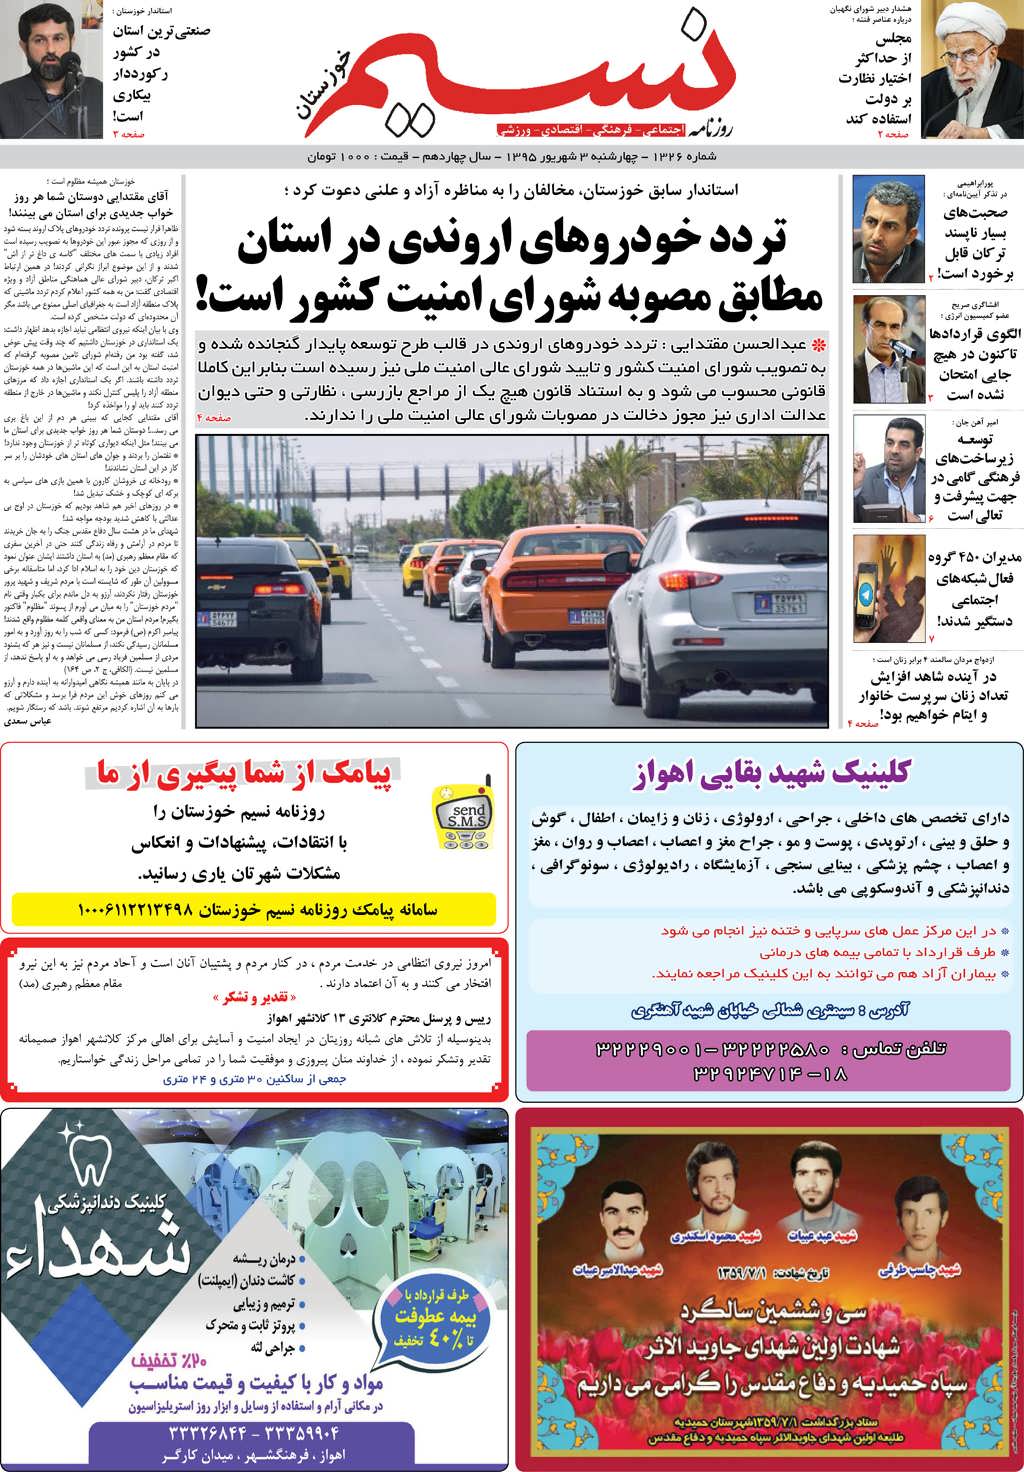 صفحه اصلی روزنامه نسیم شماره 1326